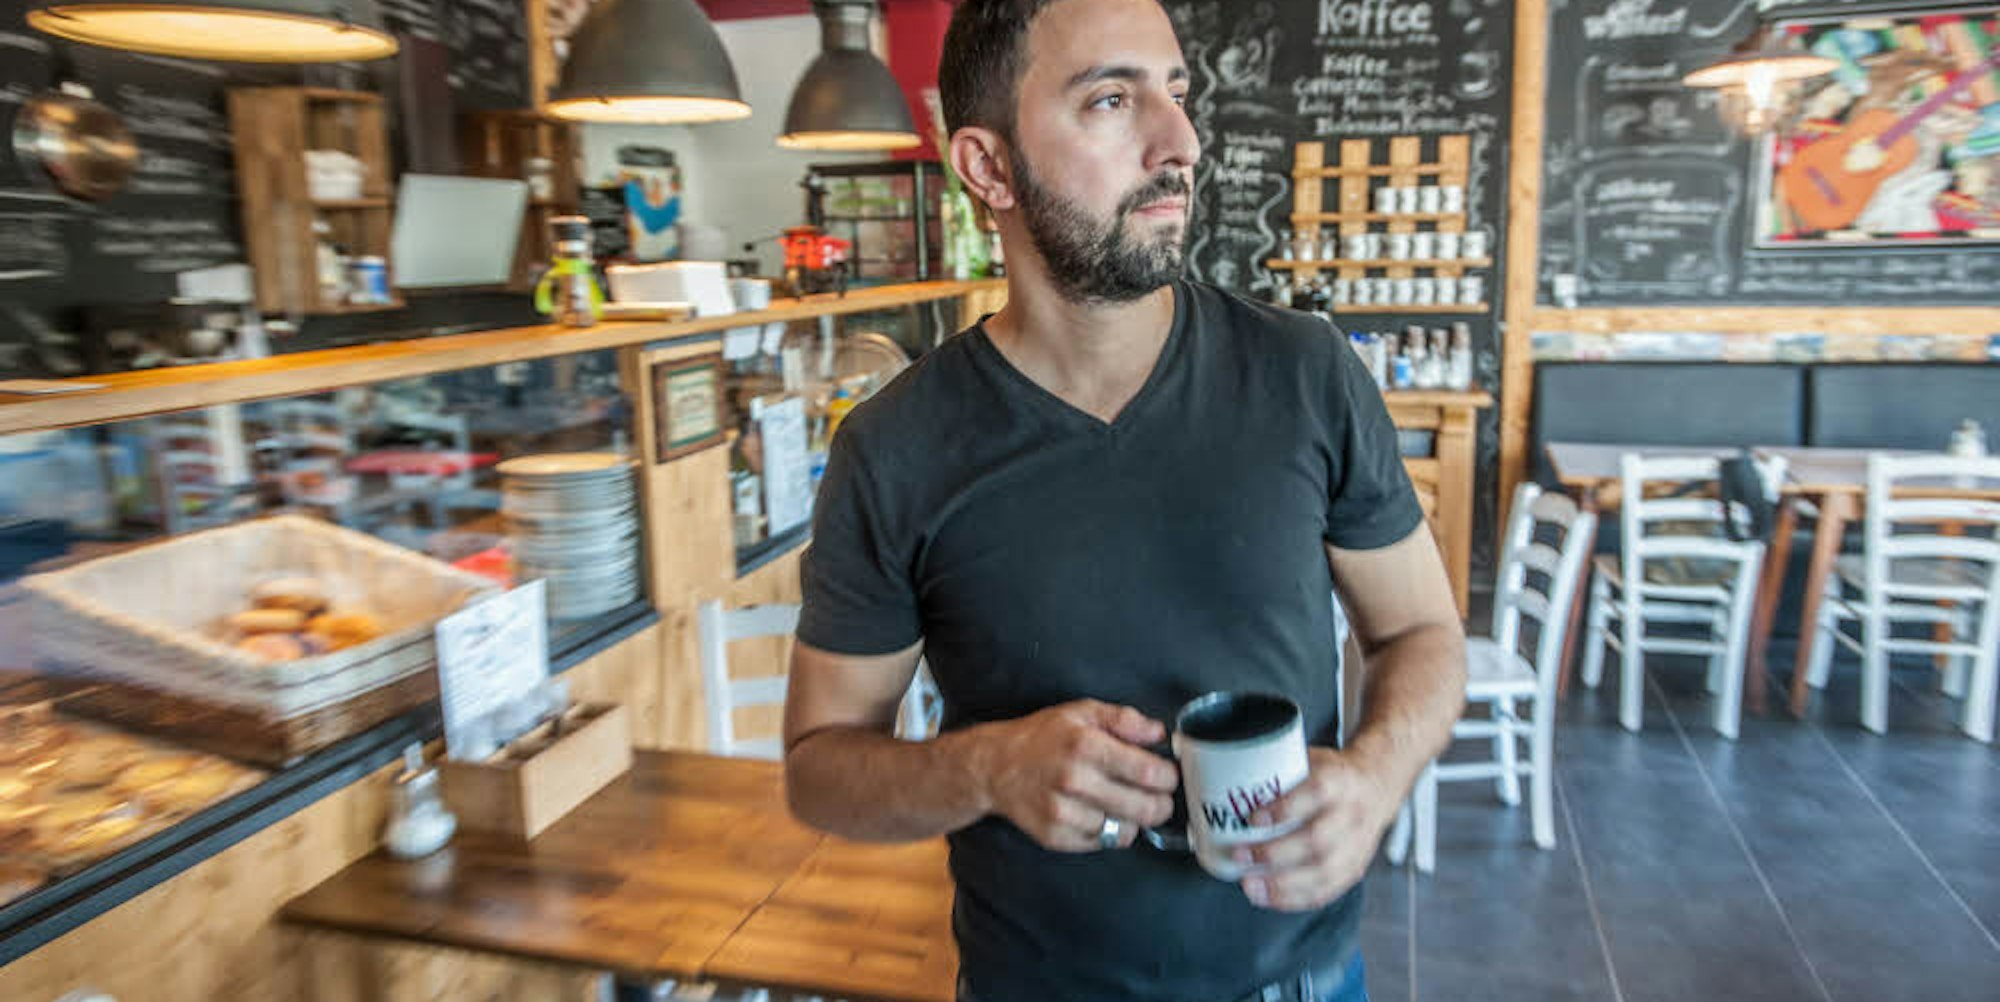 Seit einem Jahr betreibt Walter Alejandro di Cara mit seinem Café den ersten Treffpunkt in der Neuen Bahnstadt.